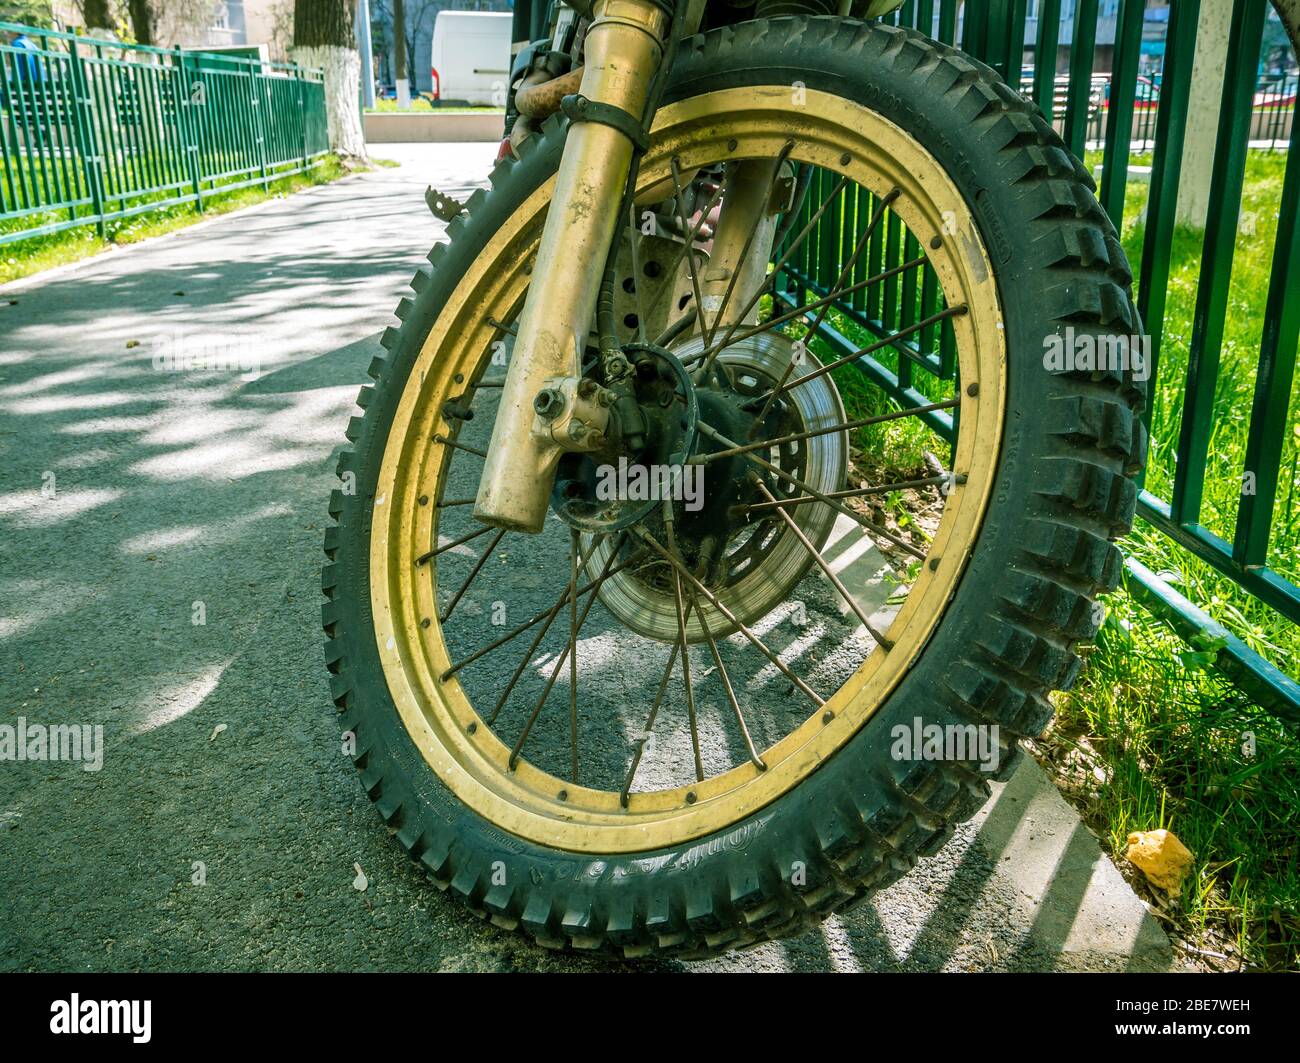 Bucarest/Roumanie - 04.09.2020: Pneus continentaux sur une moto  tout-terrain. Moto Golden enduro avec pneus continentaux Photo Stock - Alamy